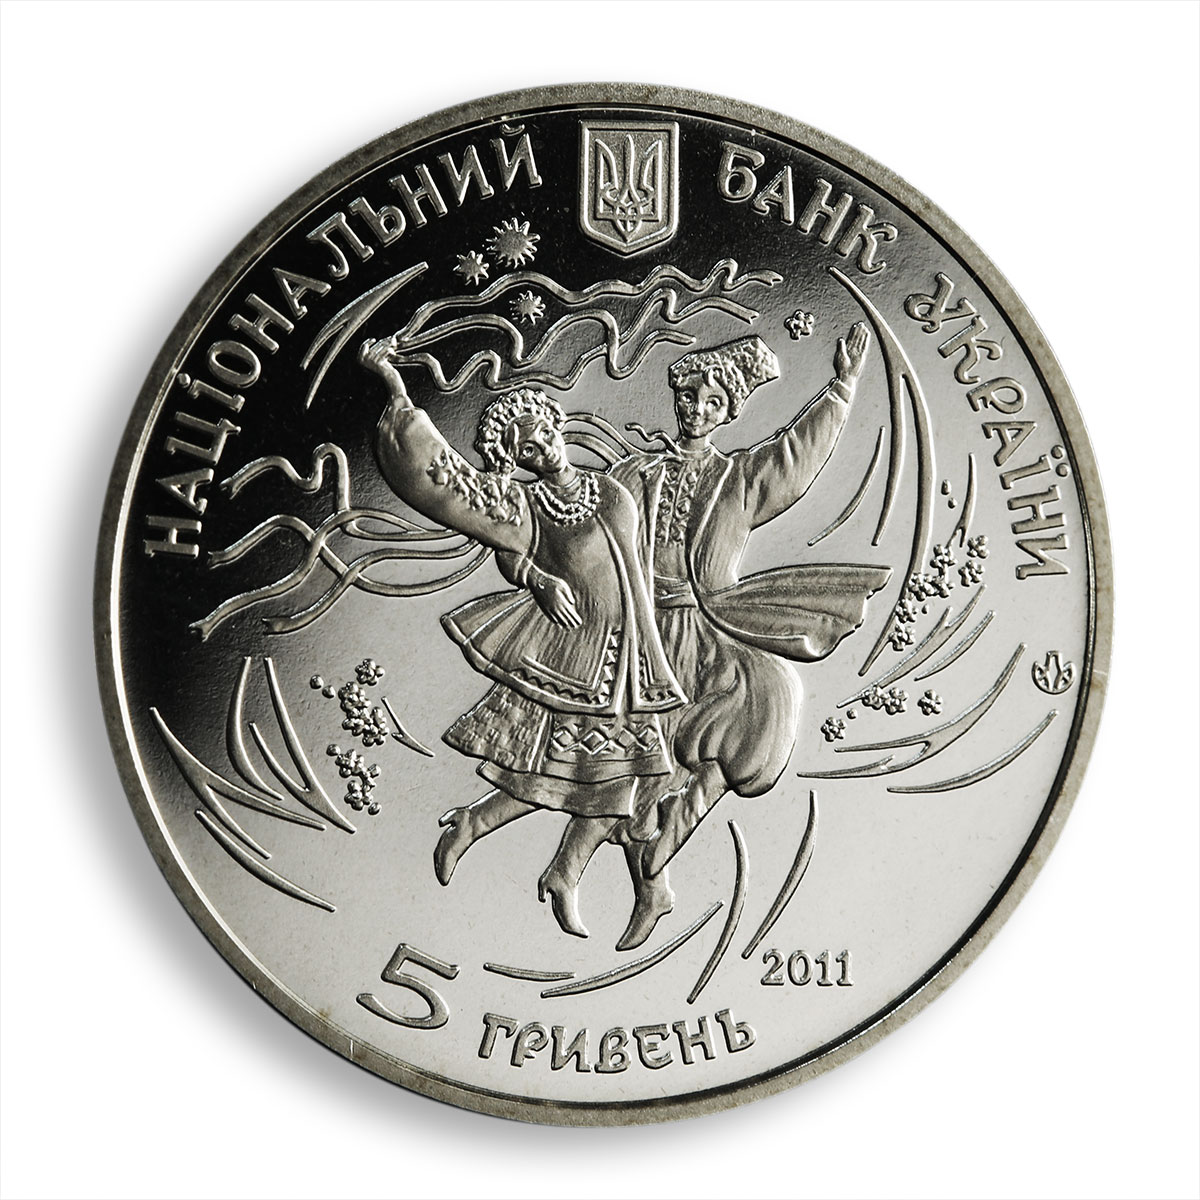 Ukraine 5 hryvnia Hopak/Gopak Ukrainian Cossack folk dance nickel coin 2011